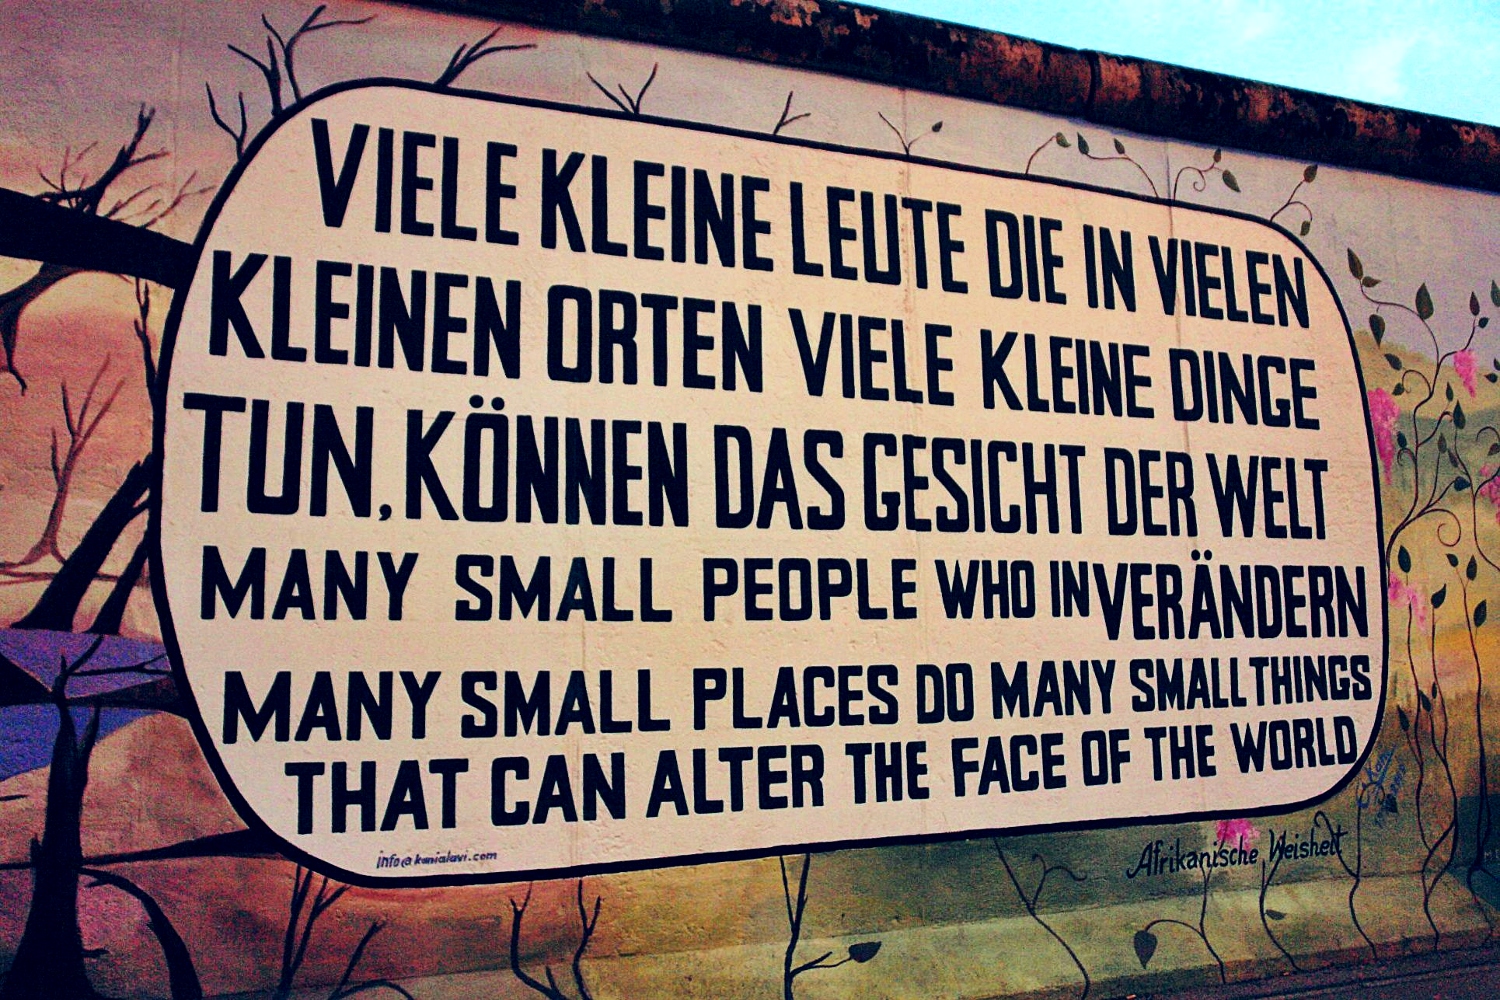 Afrikanische Weiheit auf der Berliner Mauer.